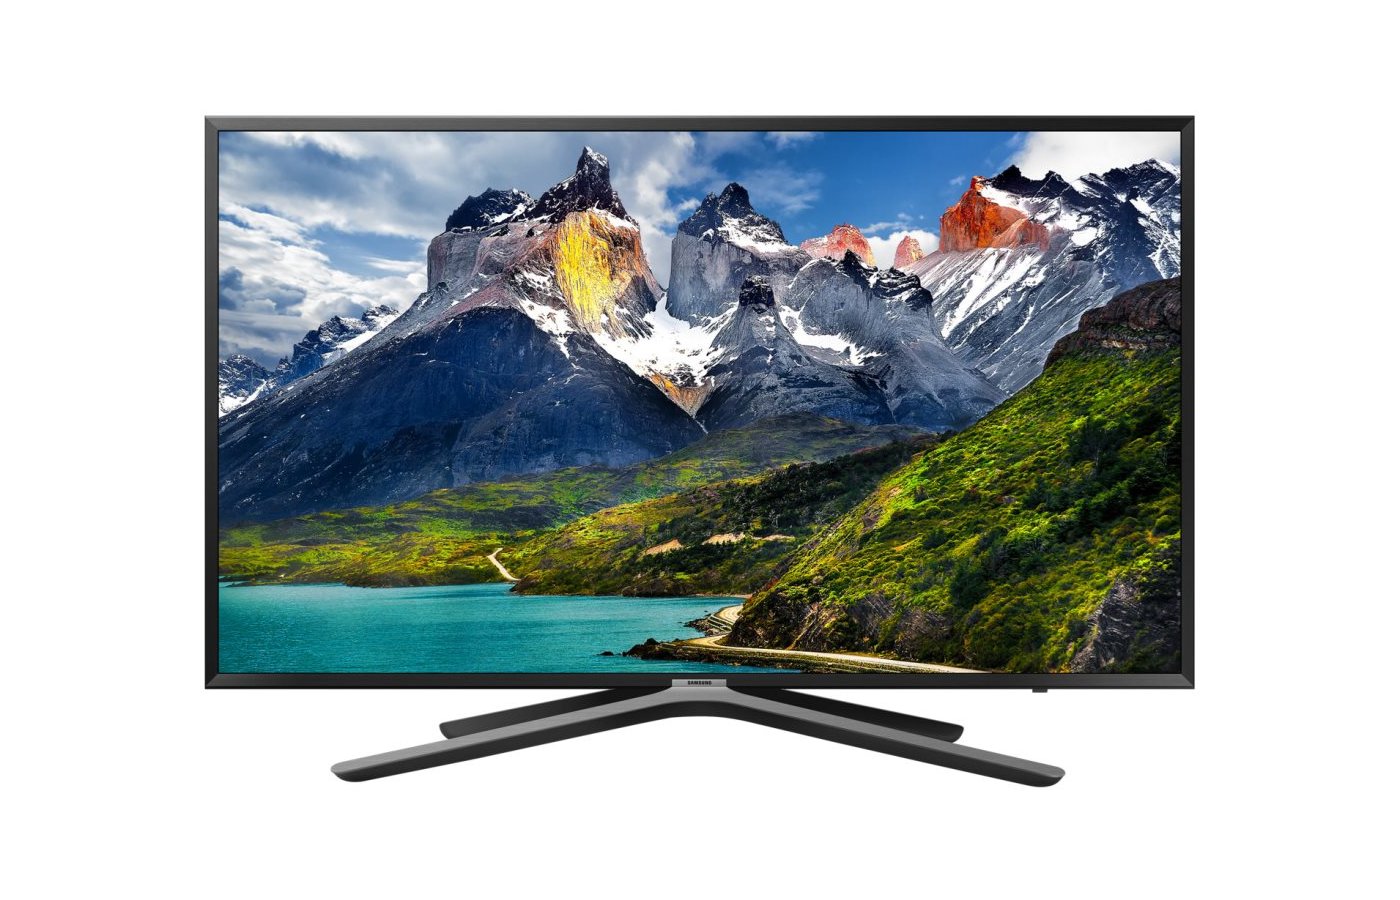 Купить телевизор самсунг смарт тв в москве. Samsung ue43n5510. Samsung ue43n5500au. Телевизор Samsung ue43n5500a. Телевизор Samsung ue43n5510.